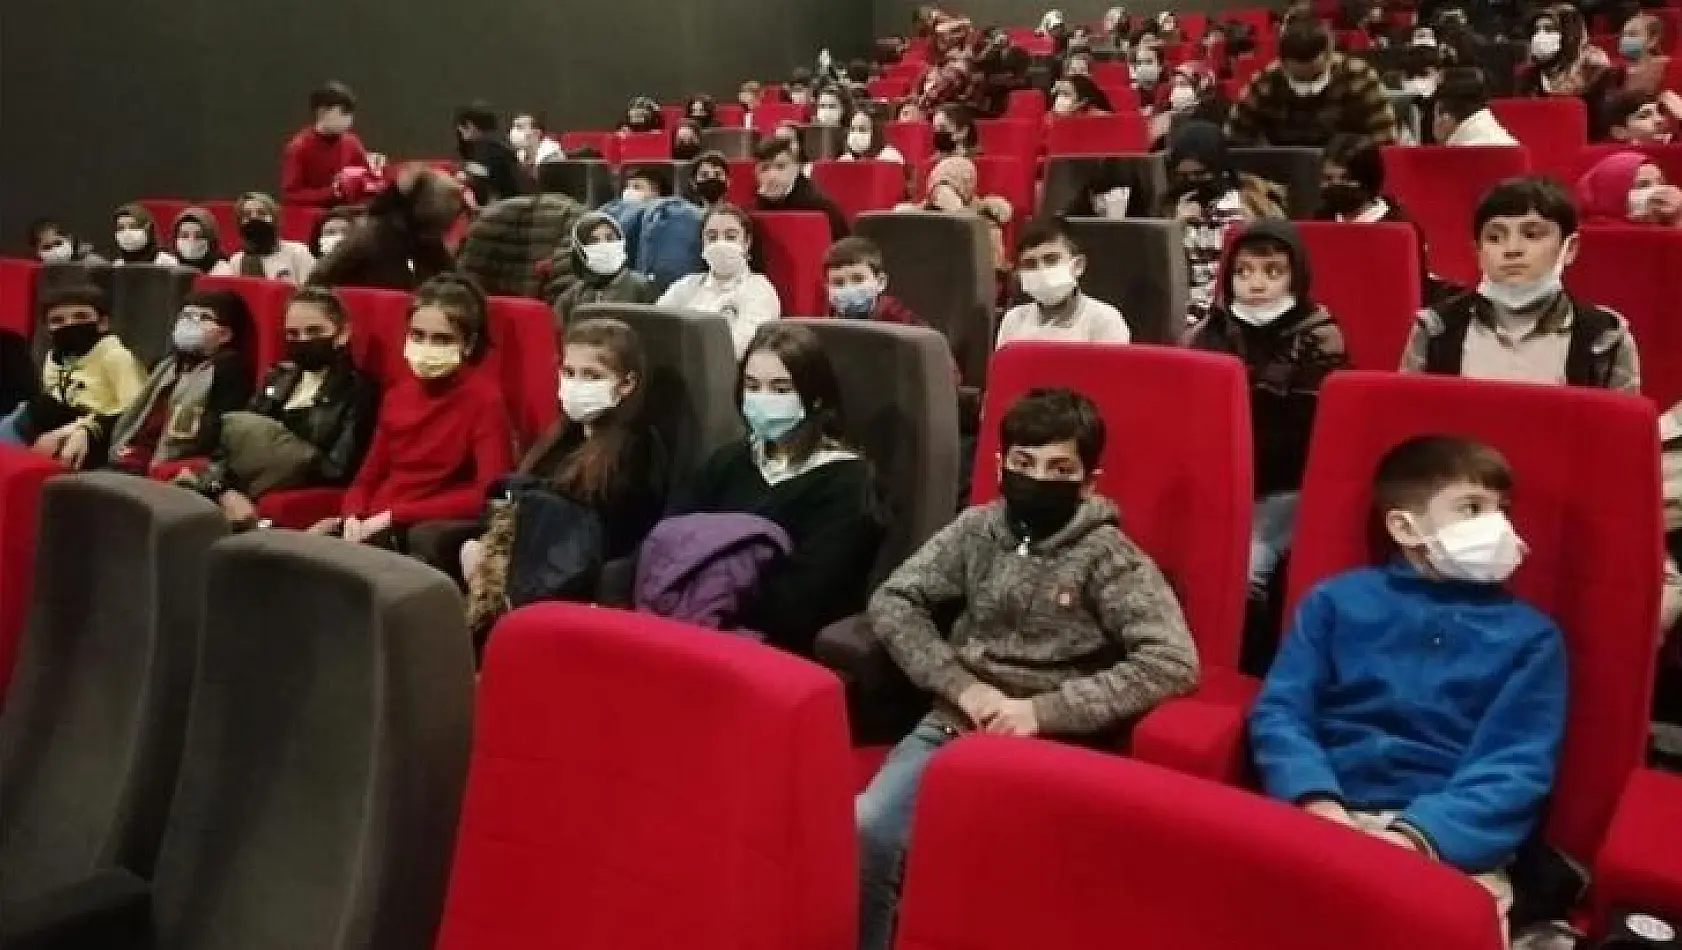 Elazığ'da öğrenciler 'Kesişme İyi ki Varsın Eren' filmini izledi